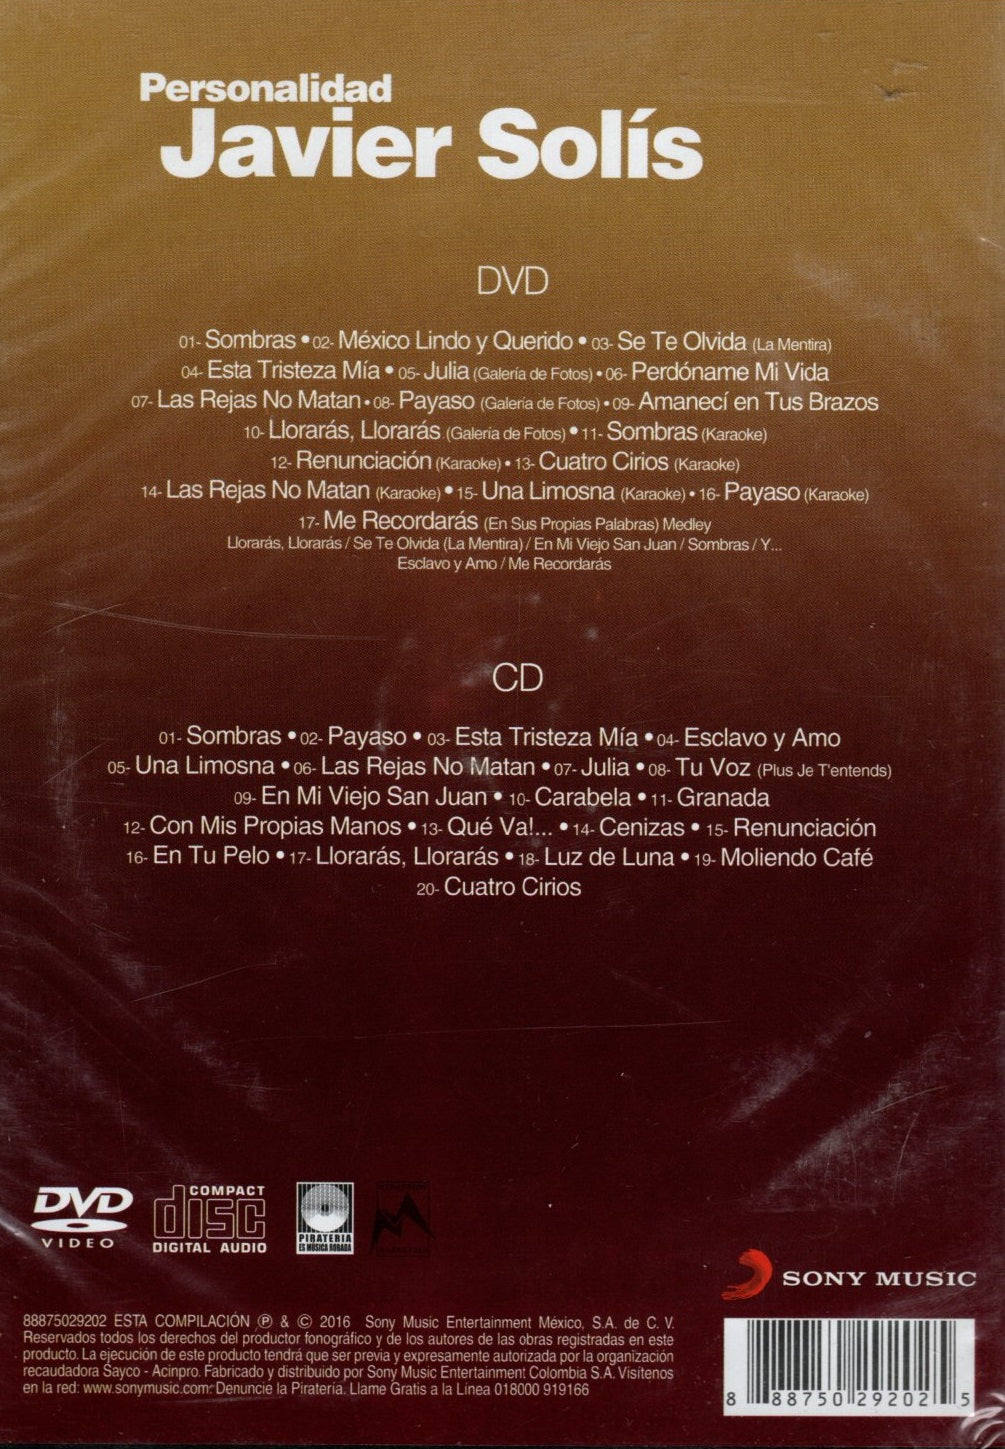 CD + DVD Javier Solís - Personalidad